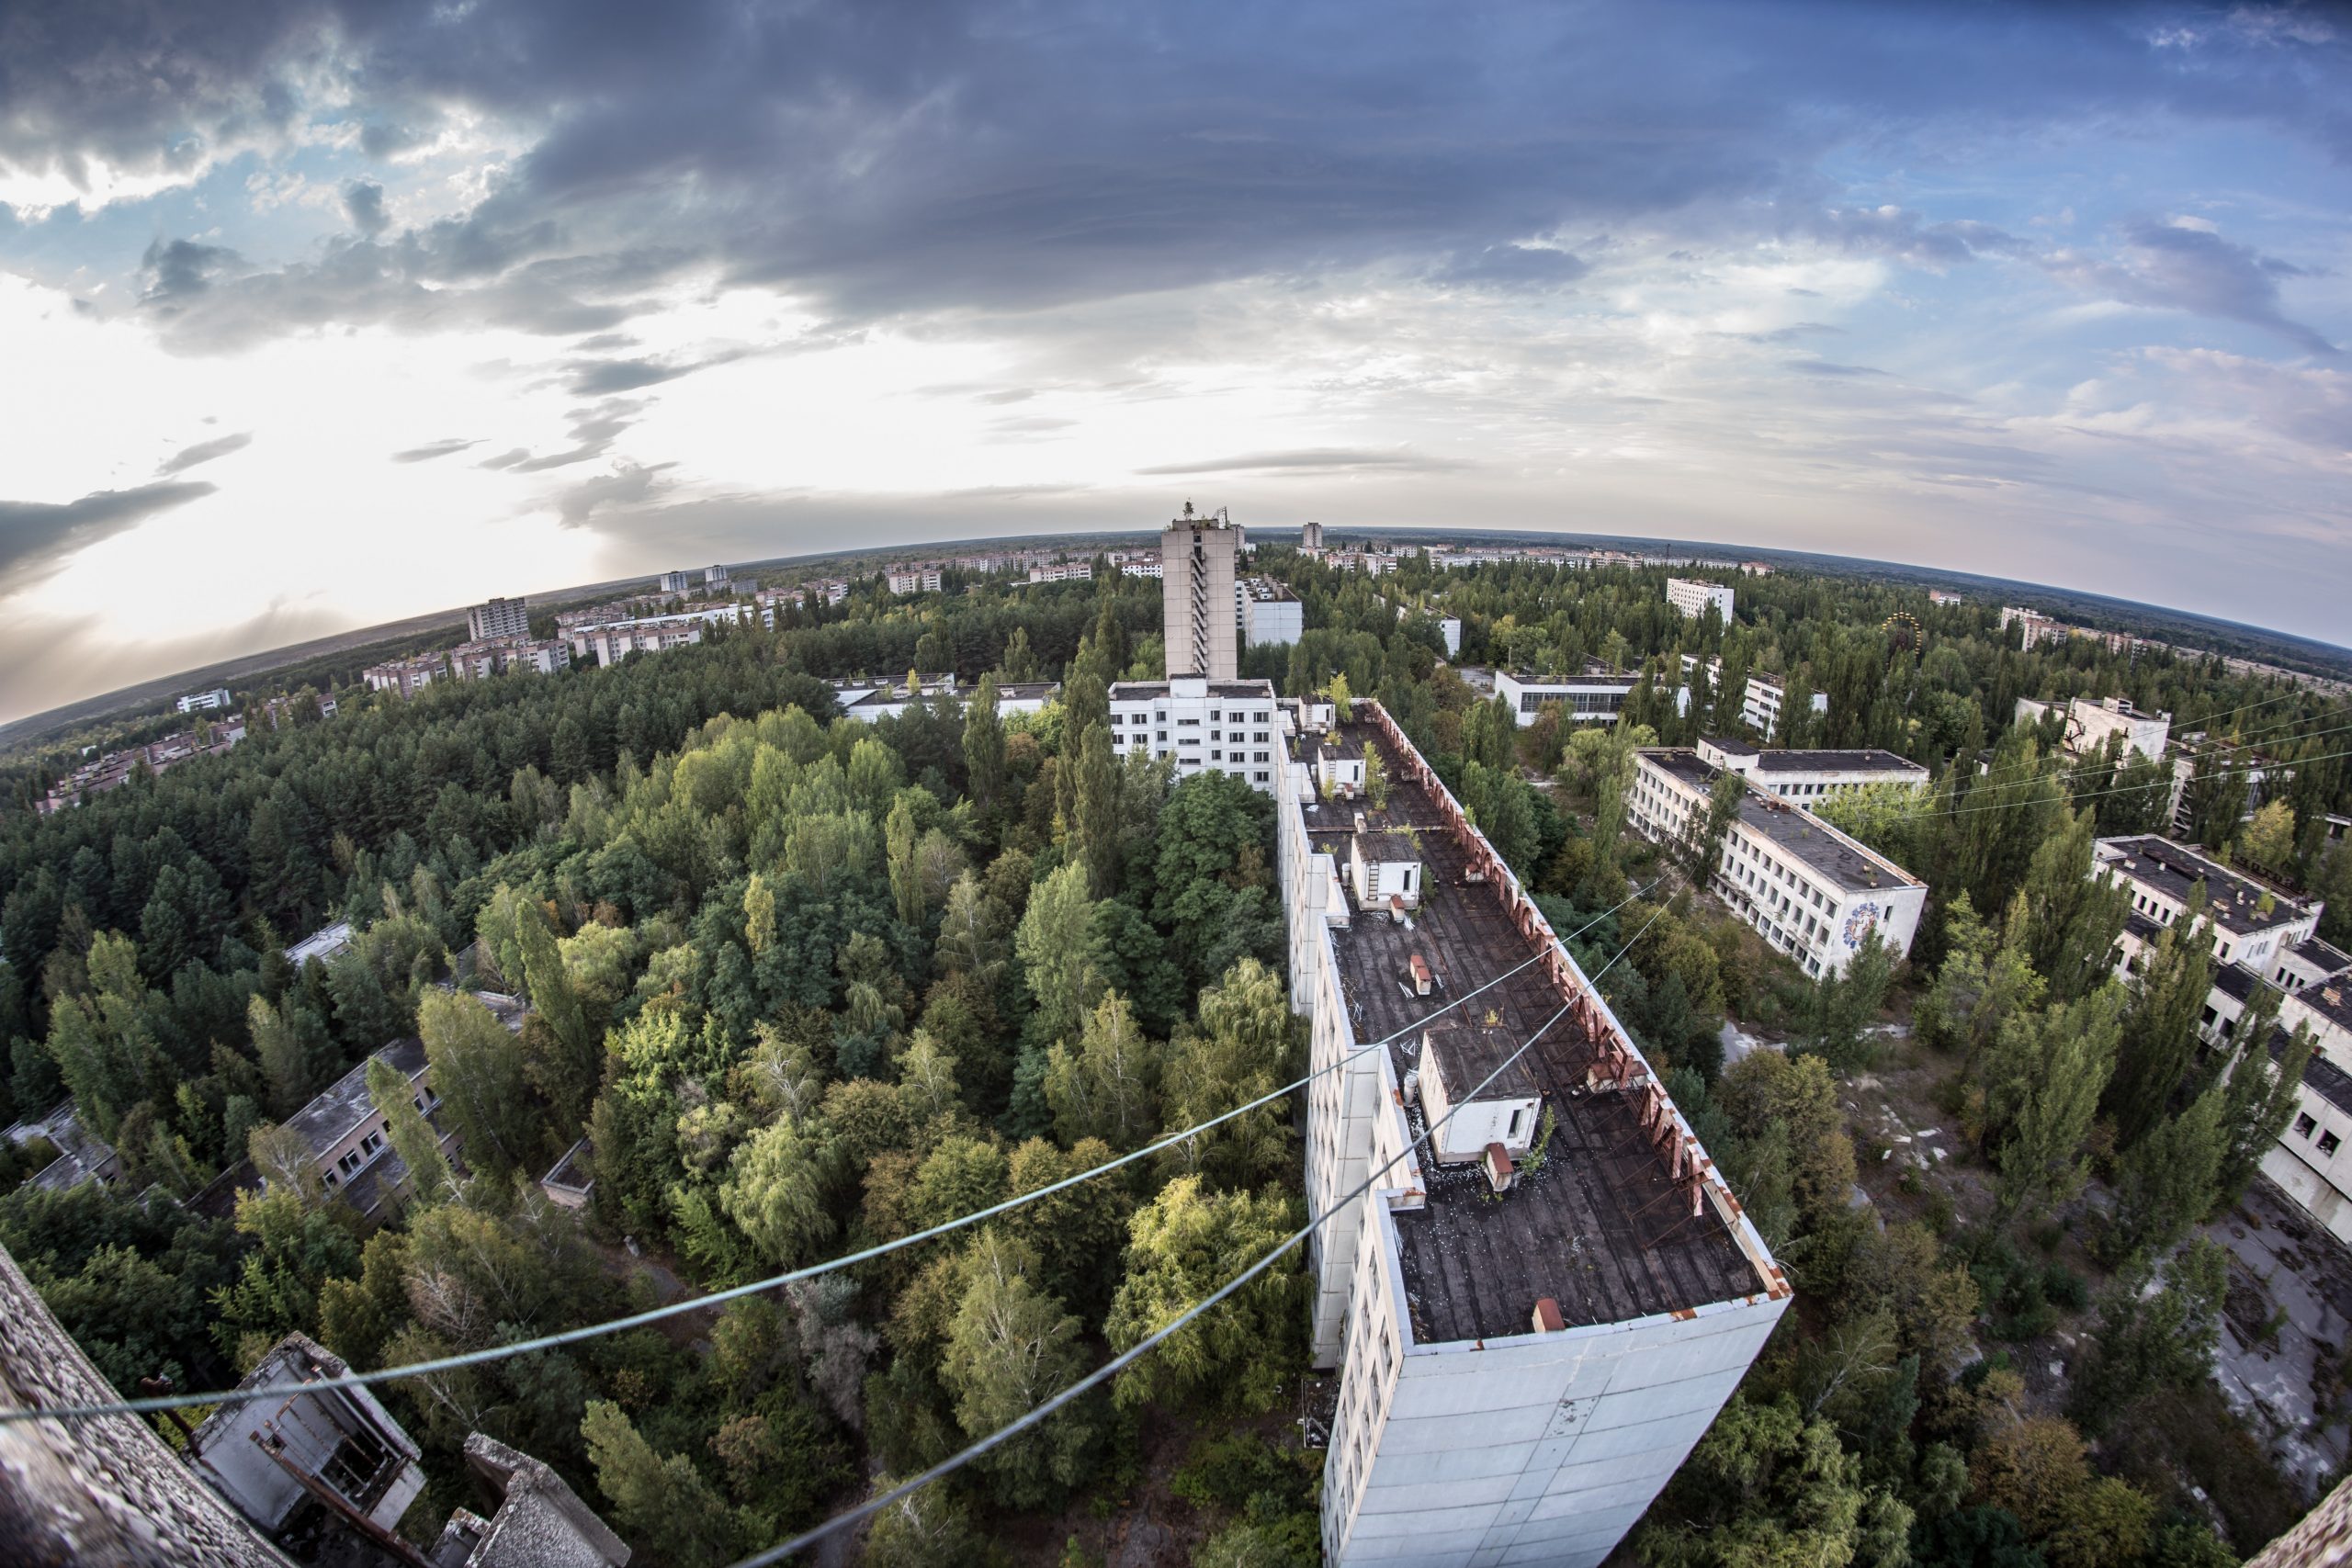 A csernobili kíatasztrófa környezete máig elhagyatott